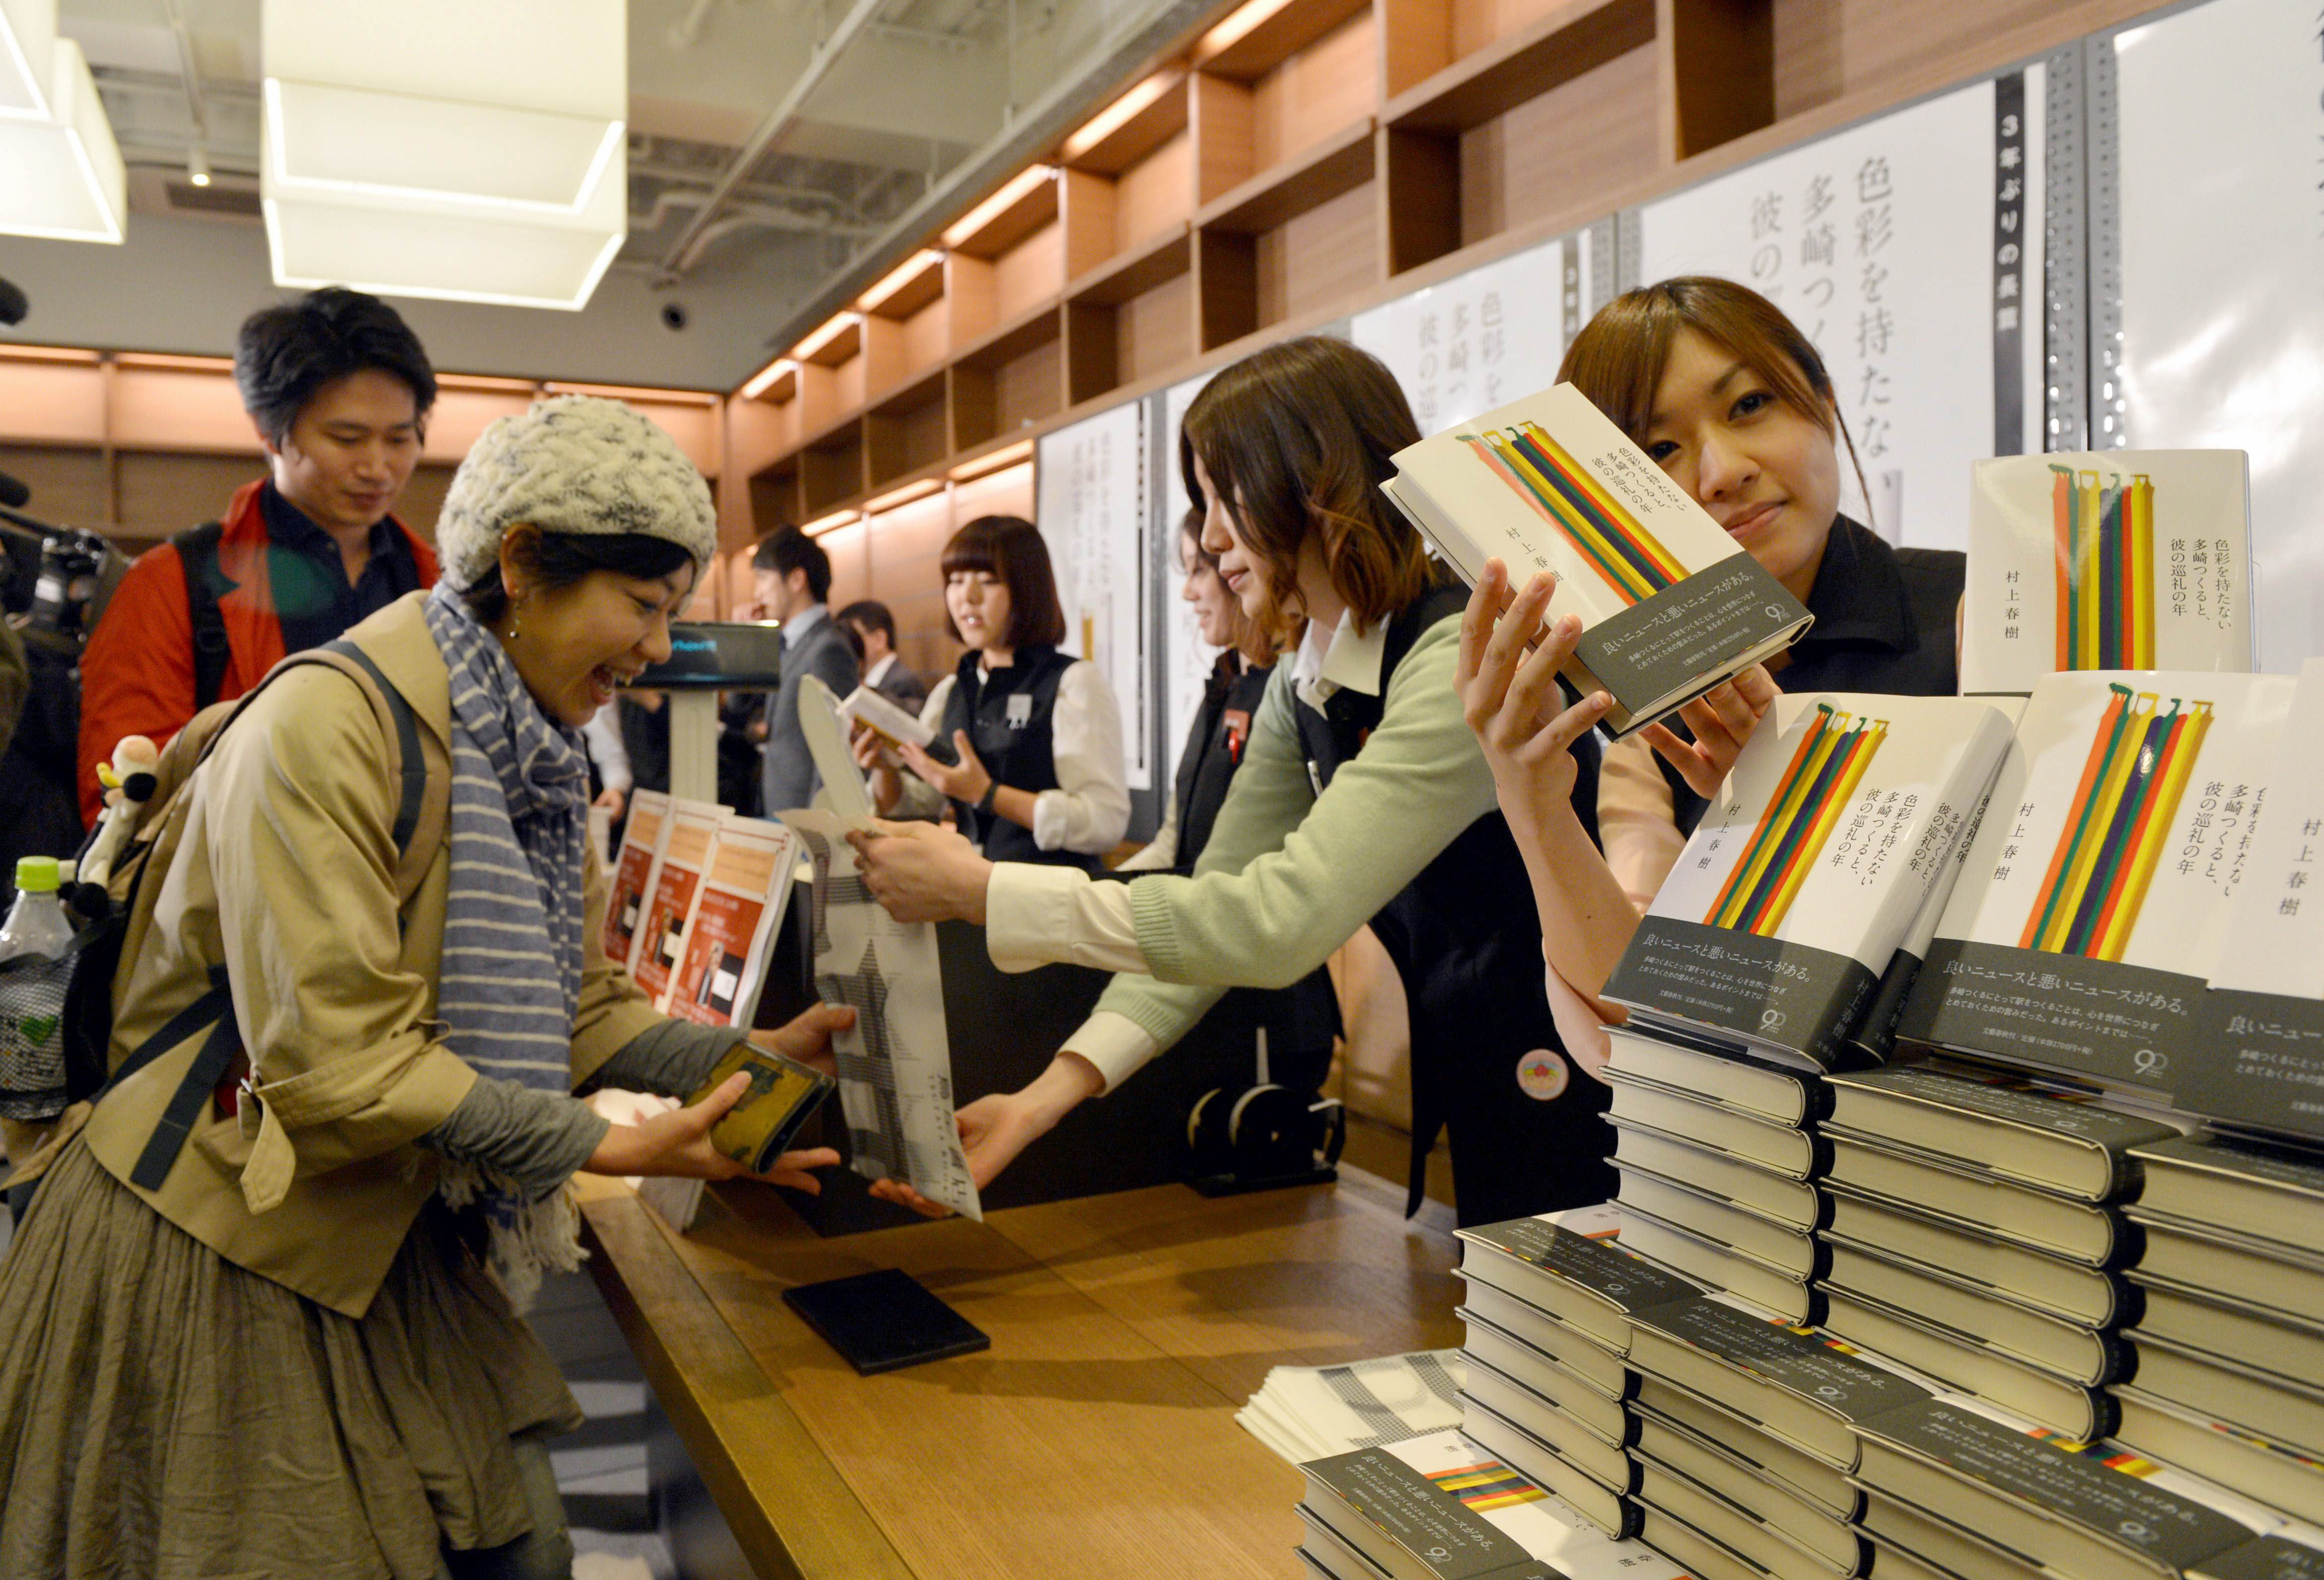 Заказать справочники. Книжный магазин в Японии. Продавец в Японии. Очередь за книгами. Очередь в книжный магазин.